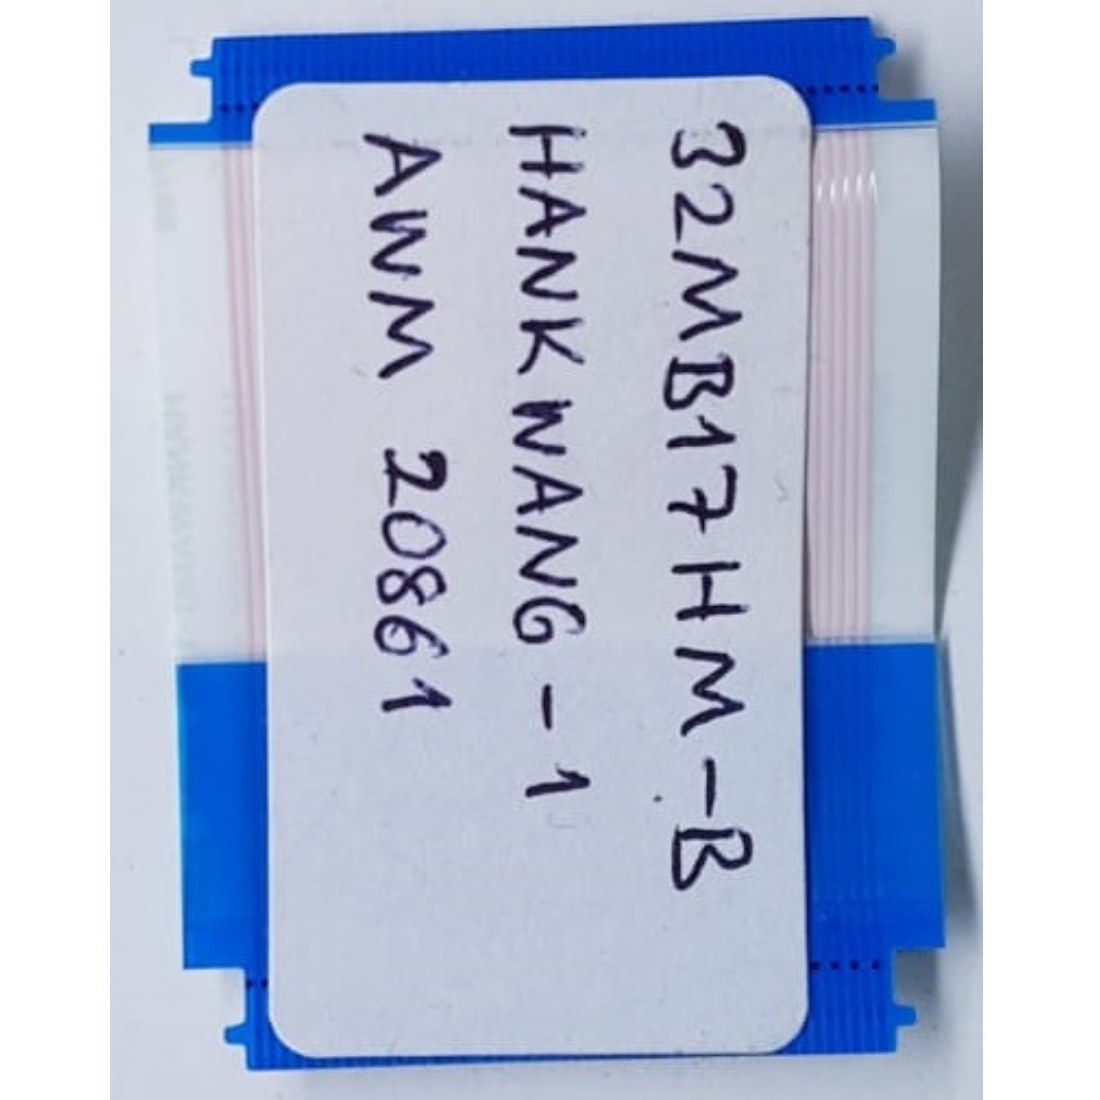 HANKWANG-1 , AWM 20861 , 2.6 CM X 4.2 CM , LG 32MB17HM-B 